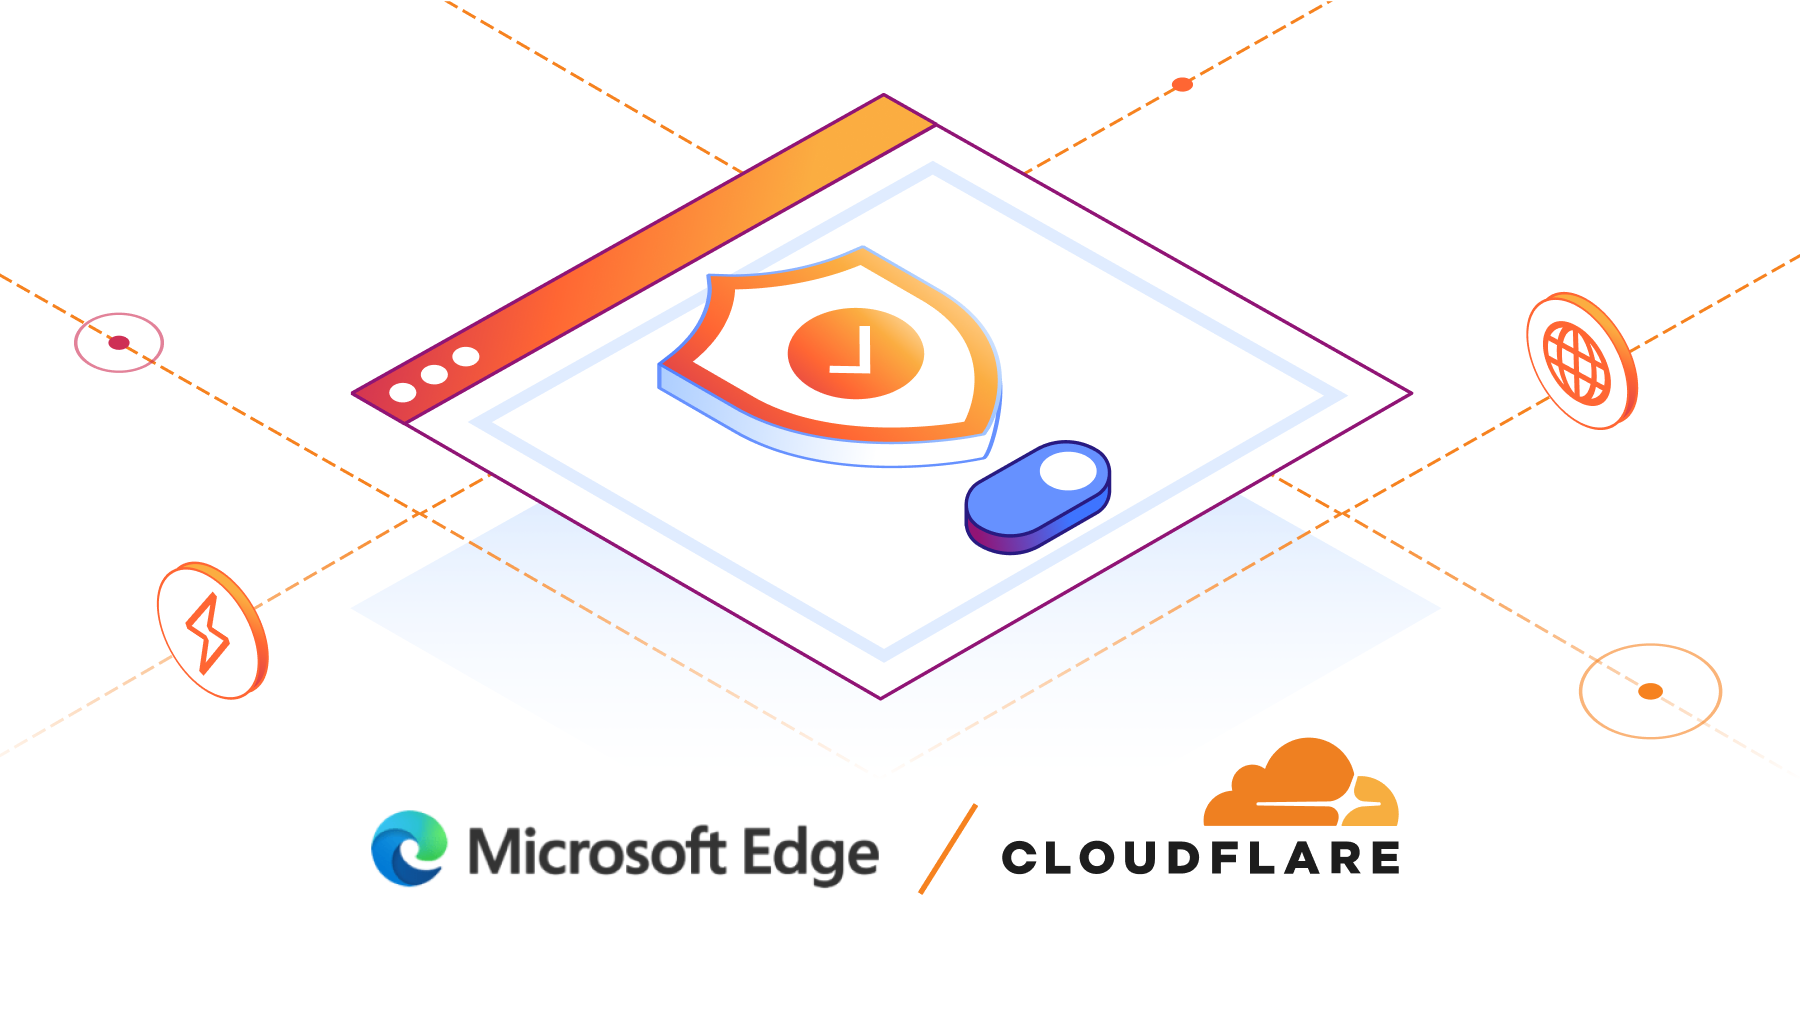 Cloudflare soutient désormais le réseau sécurisé Microsoft Edge